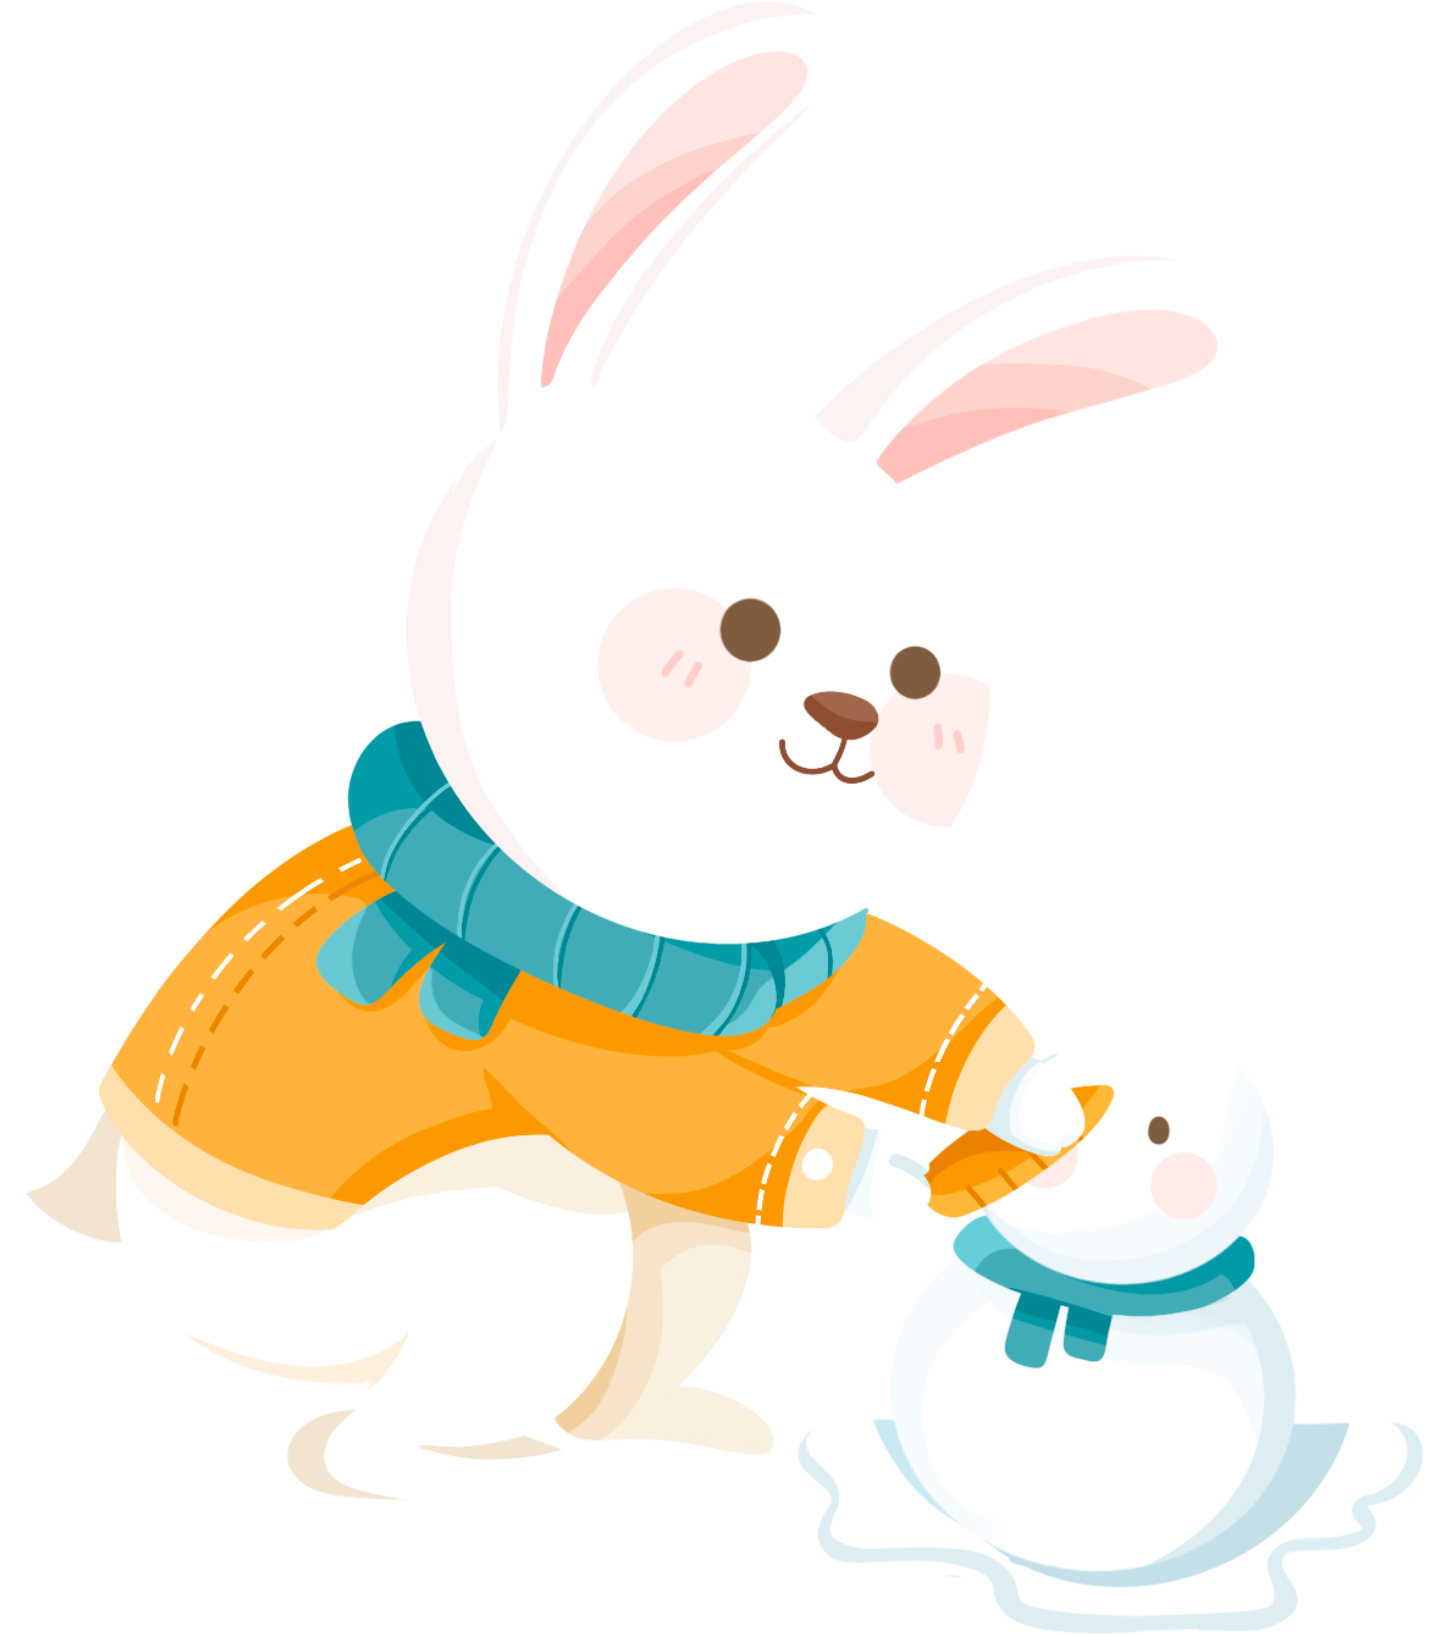 兔子堆雪人图片插画简笔画制作步骤!